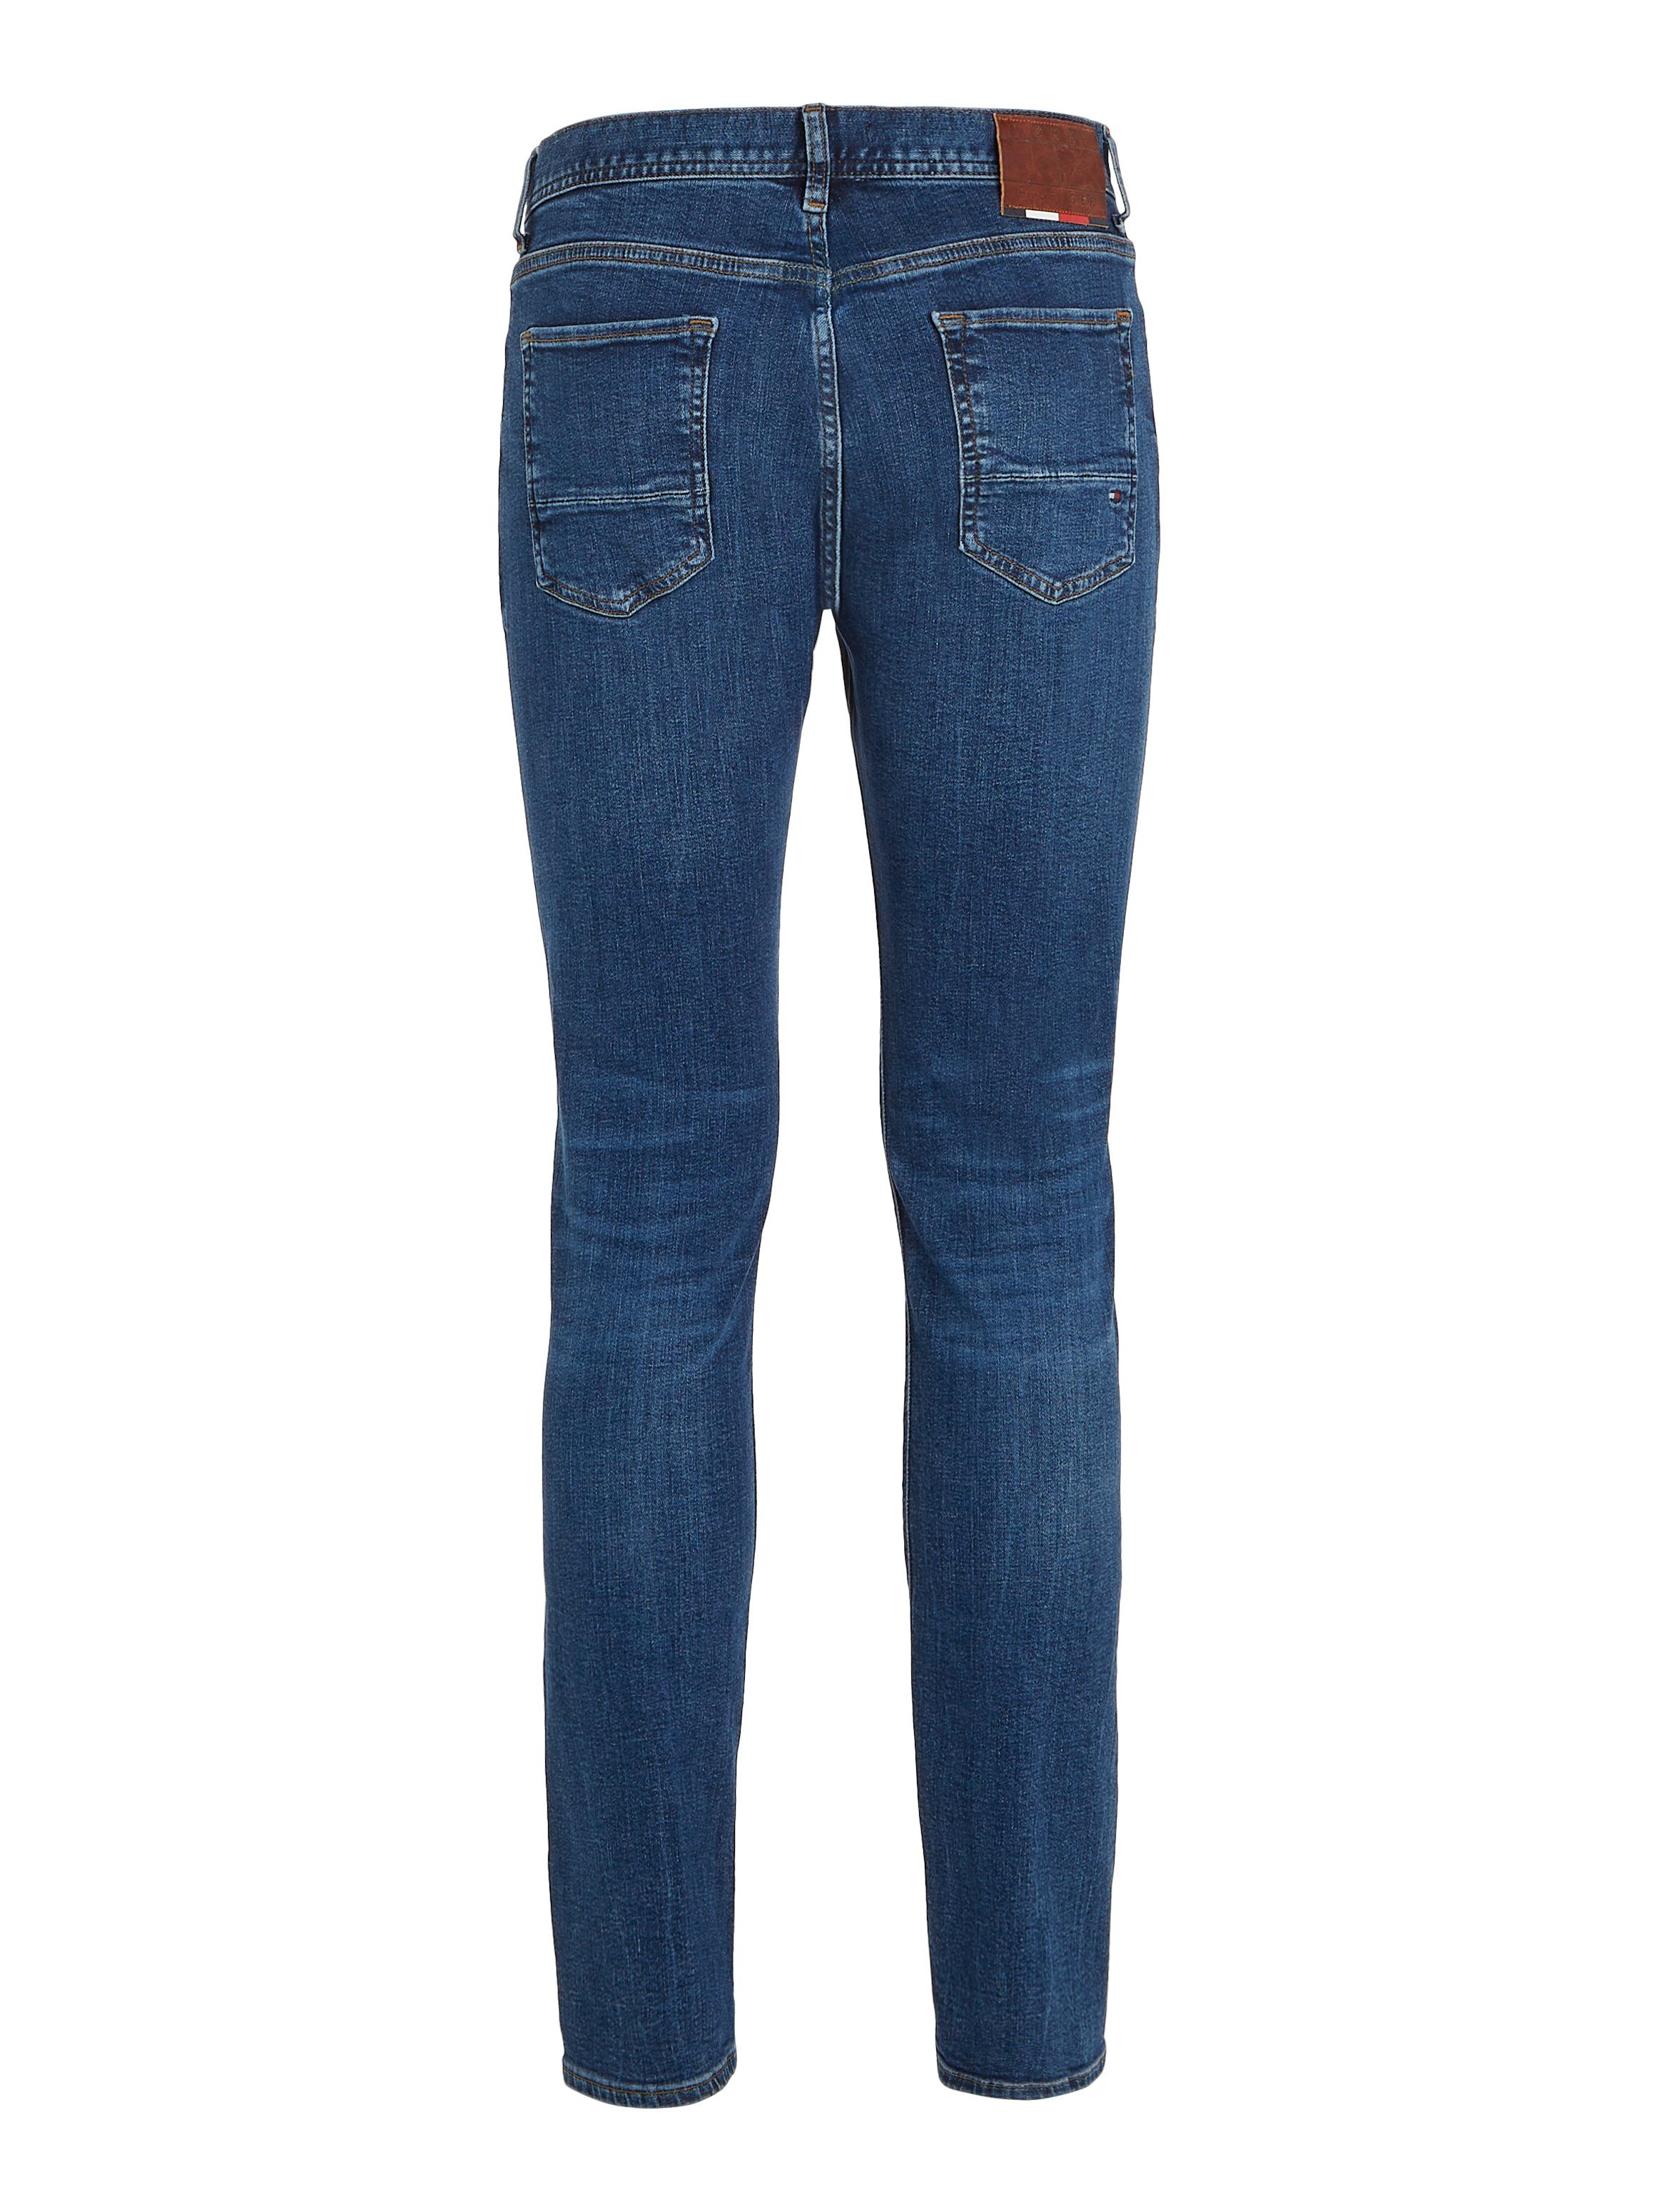 Baumwoll-Denim Bleecker oregon Slim-fit-Jeans Tommy Hilfiger extra mit bequem Stretch, indigo